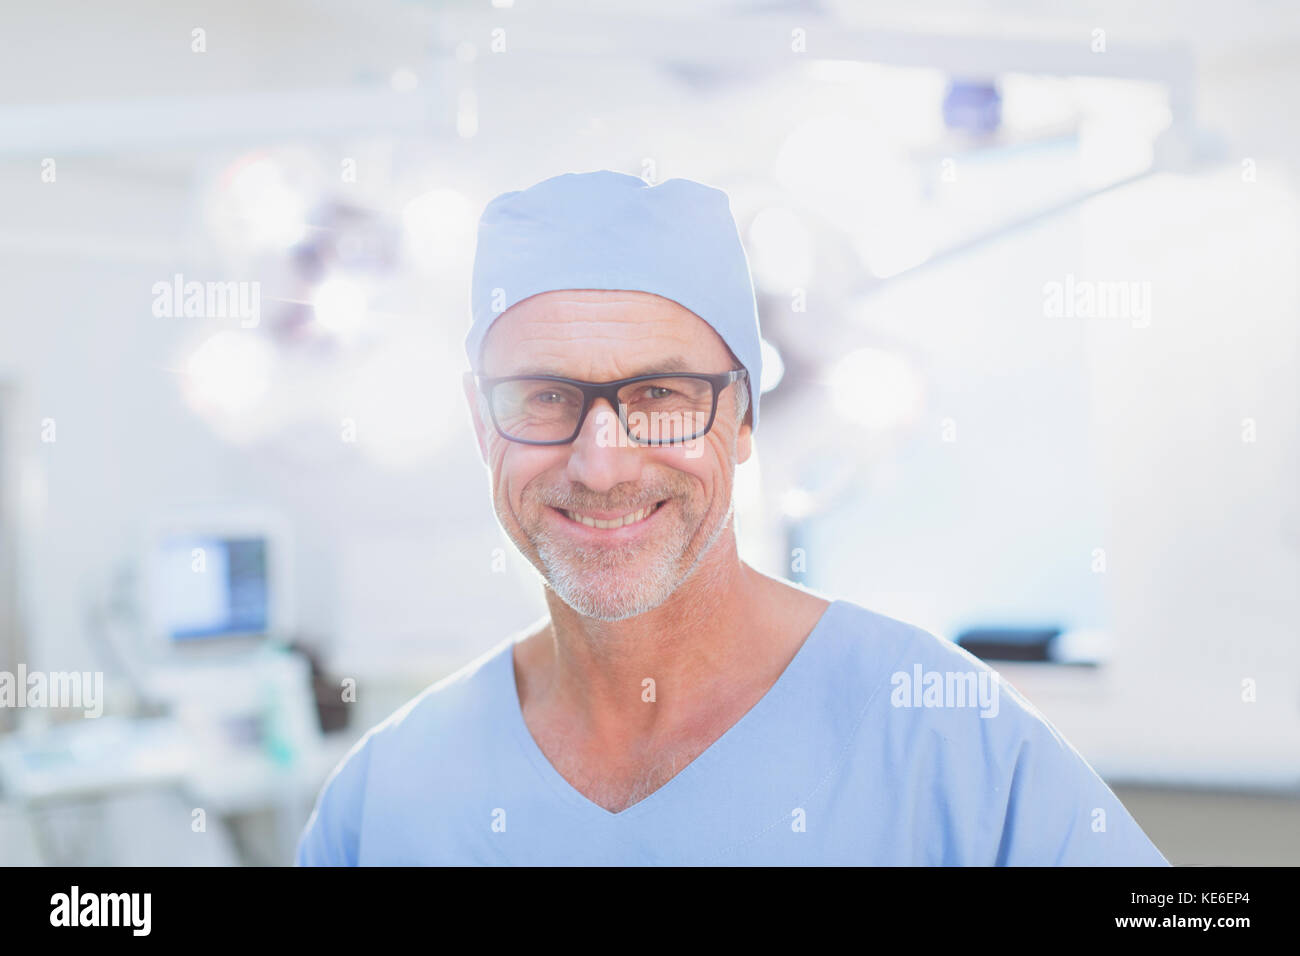 Portrait chirurgien homme mature et confiant dans la salle d'opération Banque D'Images